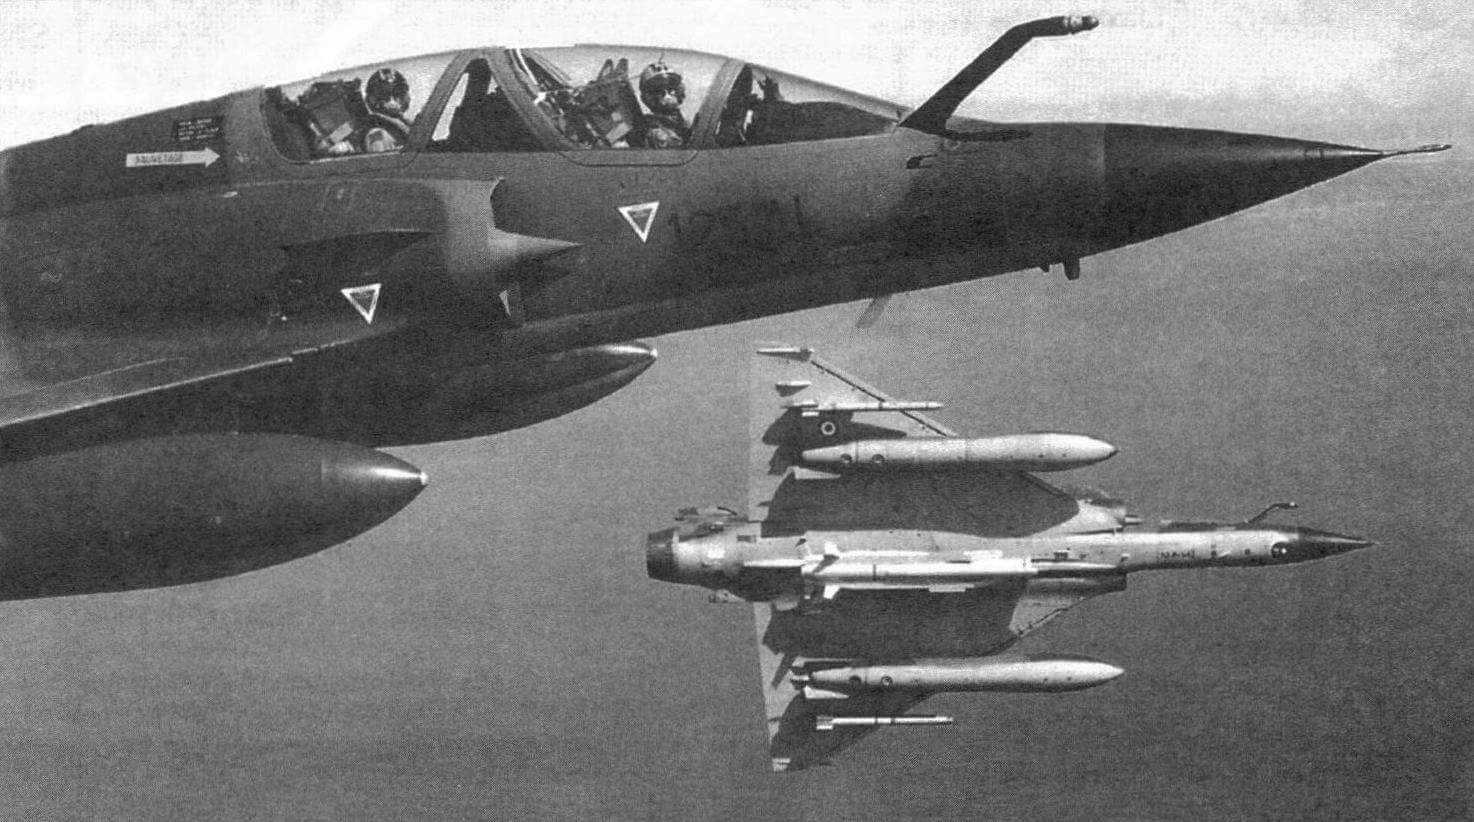 Два истребителя-бомбардировщика Mirage 2000N эскадрильи ЕС 2/4 «Лафайет» с подвешенными учебными ракетами ASMP под фюзеляжем, ракетами «воздух-воздух» Magic 2 и дополнительными топливными баками под крылом